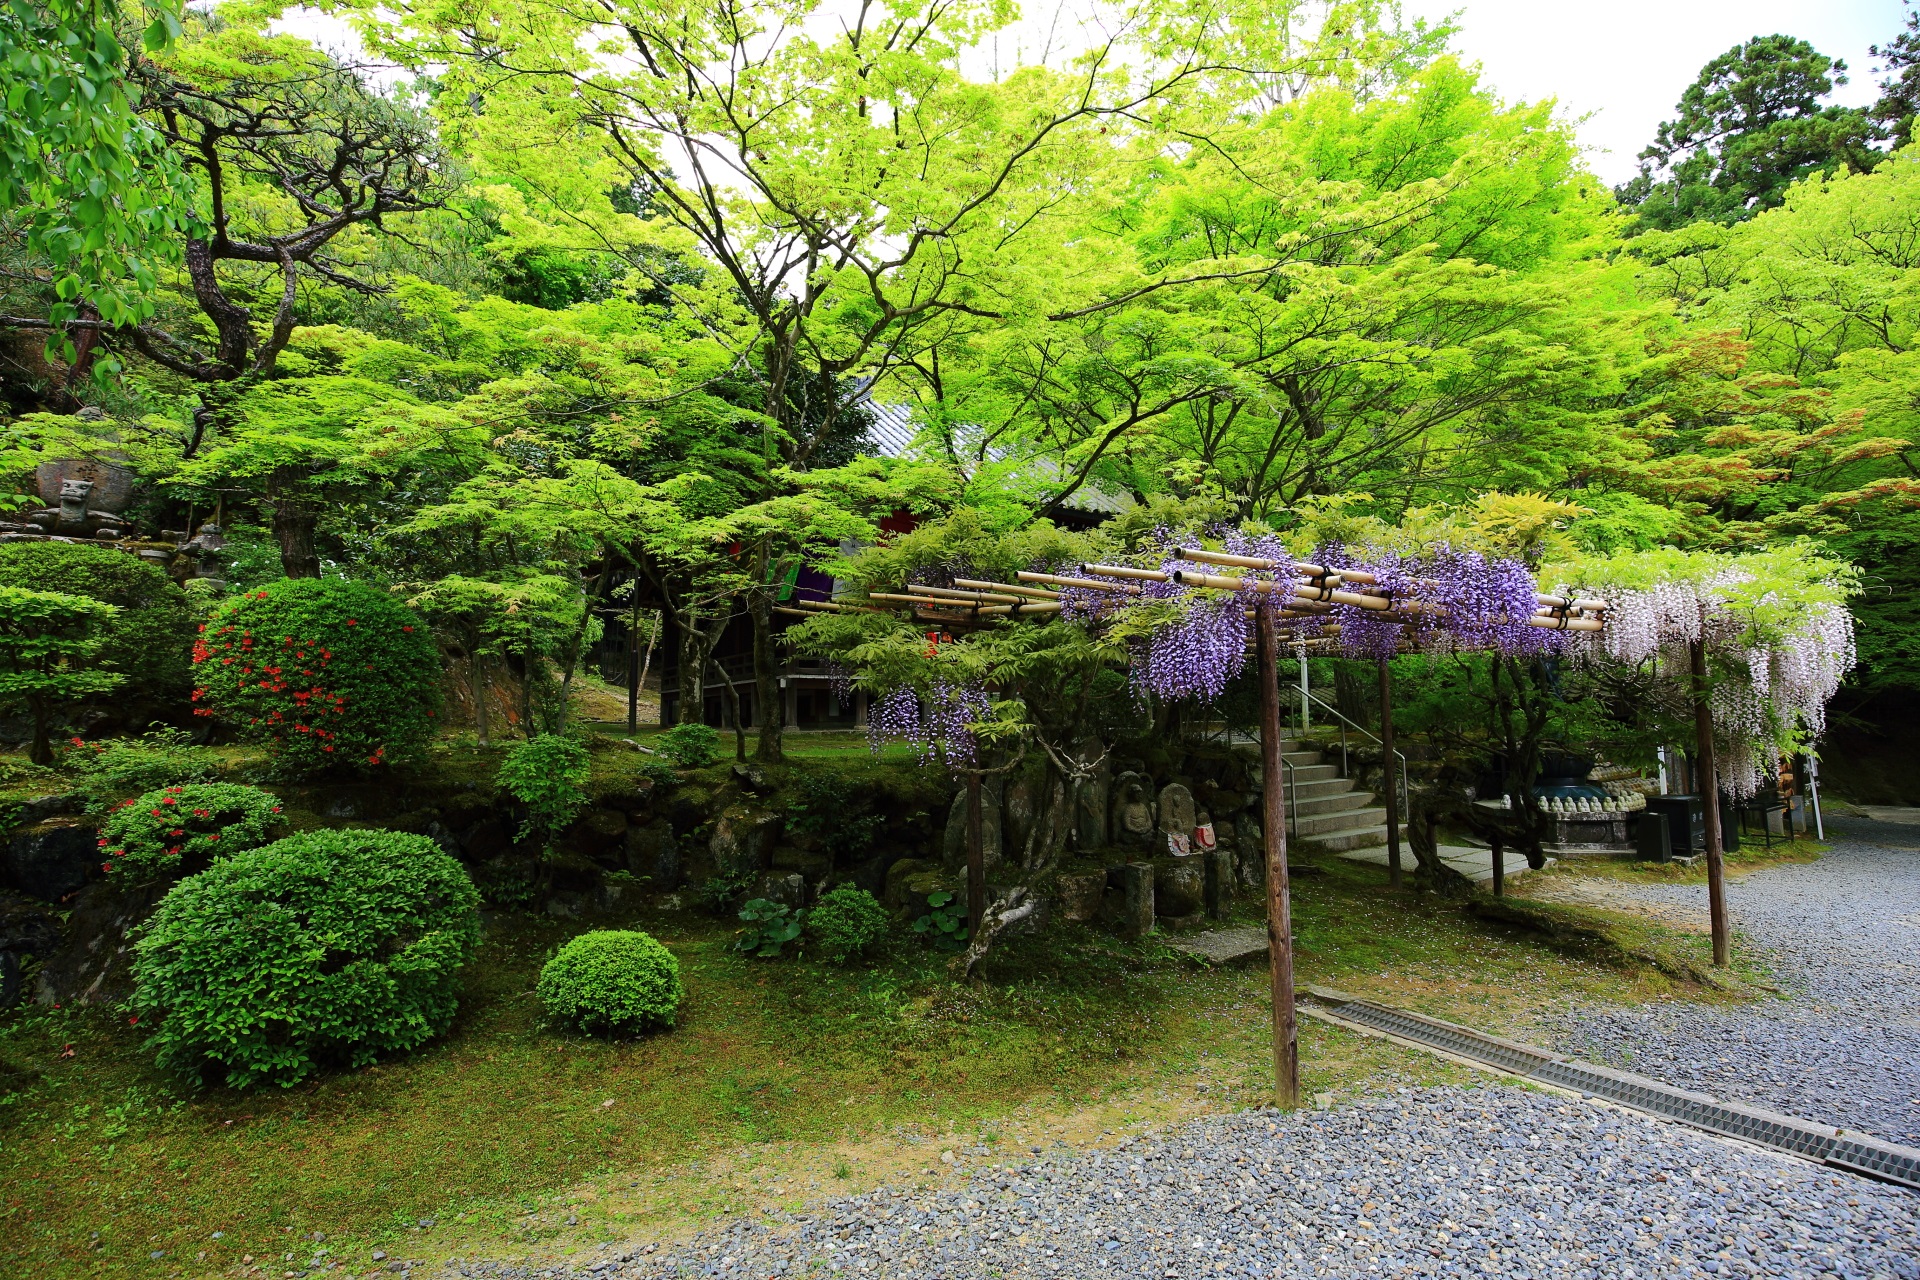 見事な爽やかな緑につつまれる今熊野観音寺の綺麗な新緑